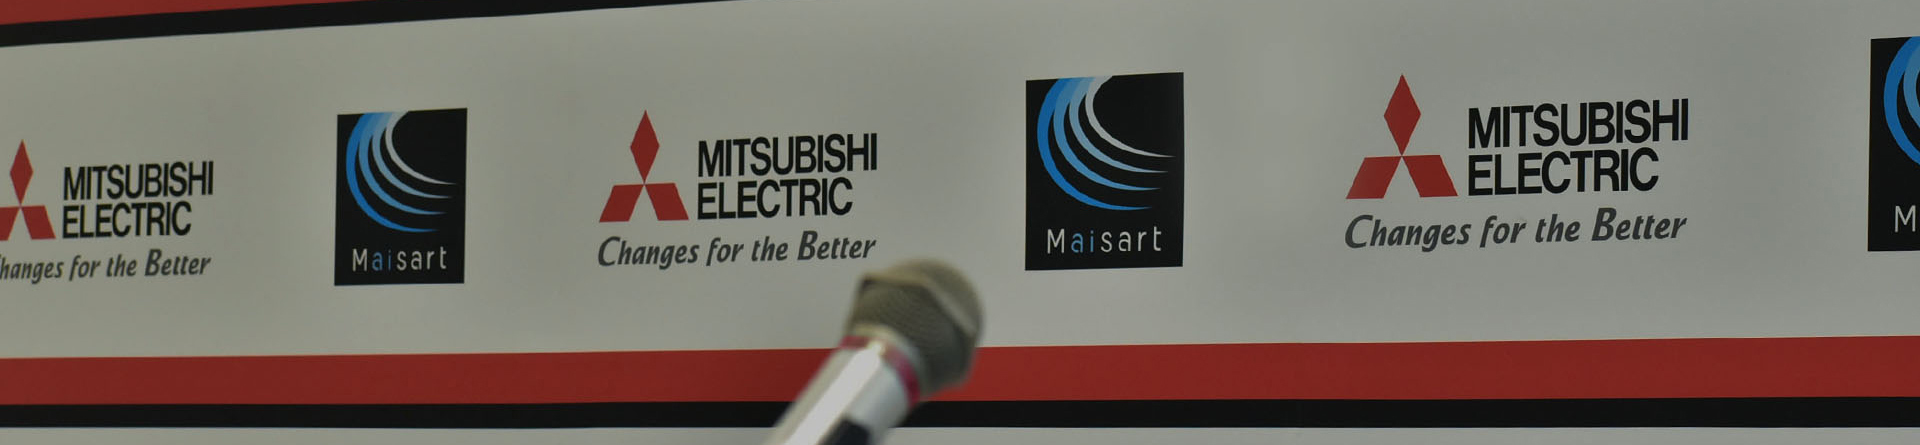 Mitsubishi Electric Việt Nam phối hợp cùng Sở Công Thương tỉnh Hậu Giang tổ chức Hội thảo “Sử dụng năng lượng tiết kiệm và hiệu quả trong lĩnh vực sản xuất công nghiệp trên địa bàn tỉnh Hậu Giang”